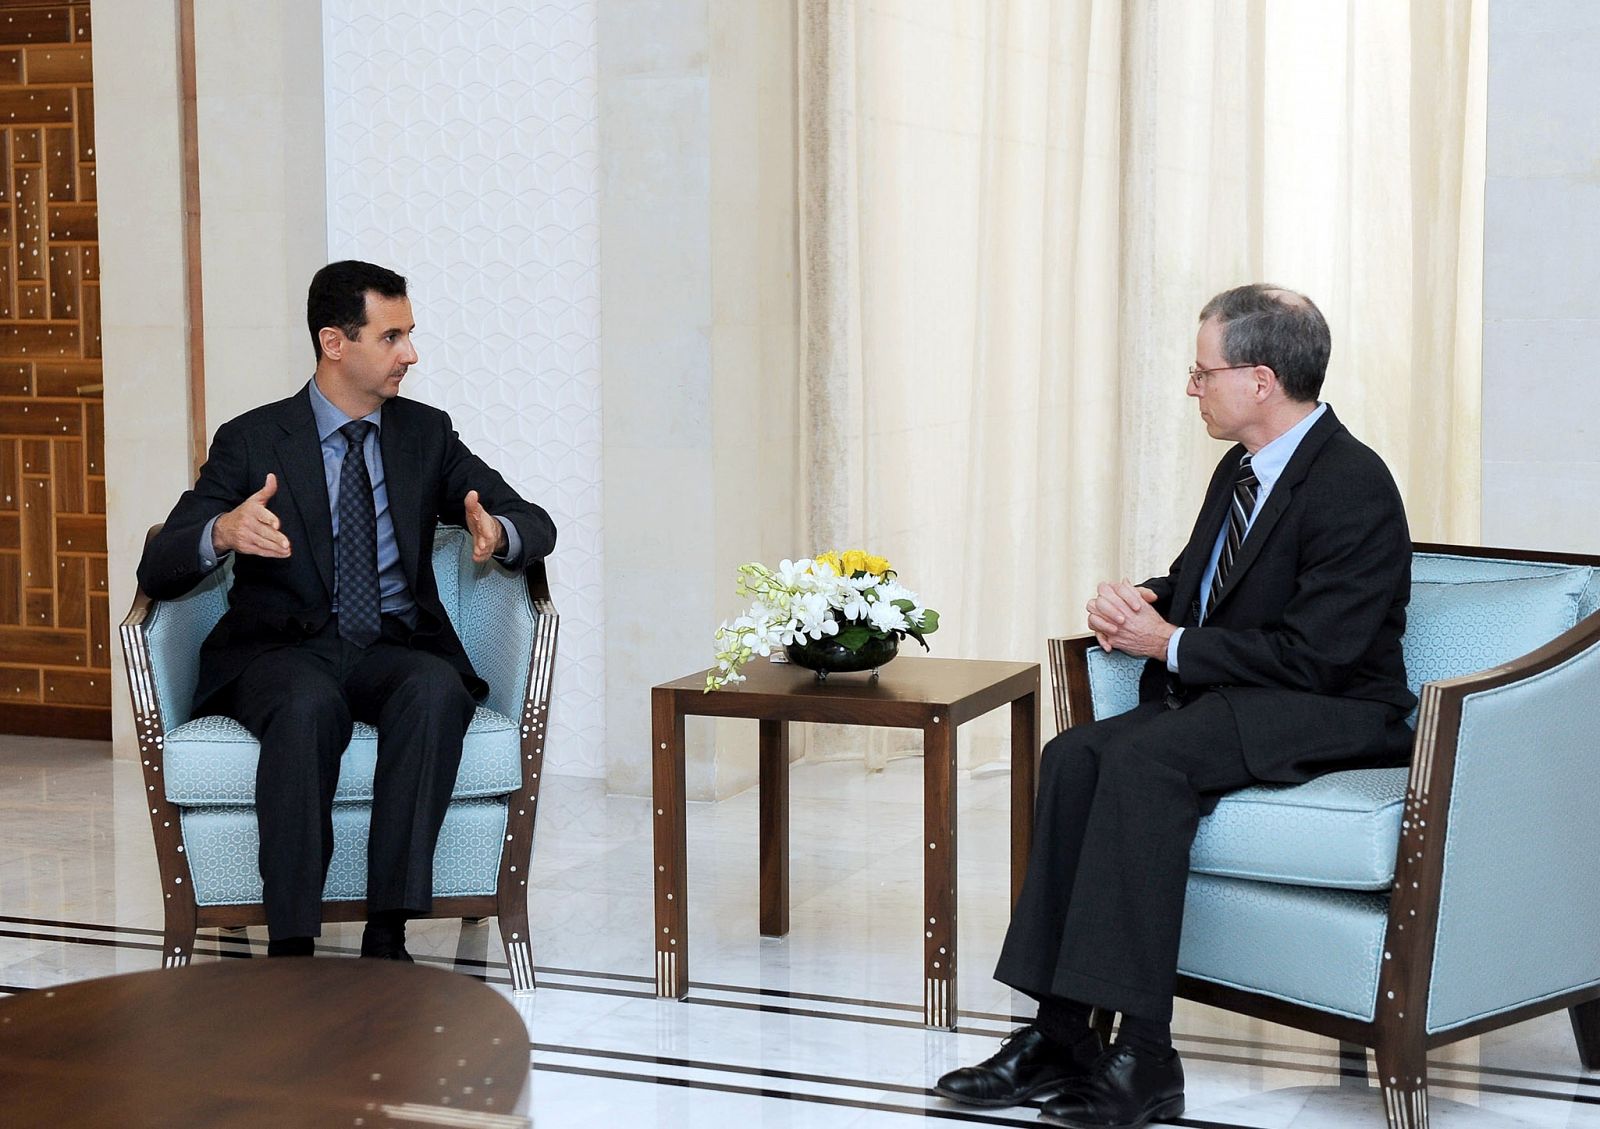 Foto de archivo del embajador de EE.UU., Robert Ford (derecha), hablando con el presidente sirio Bachar al Asad el 27 de enero